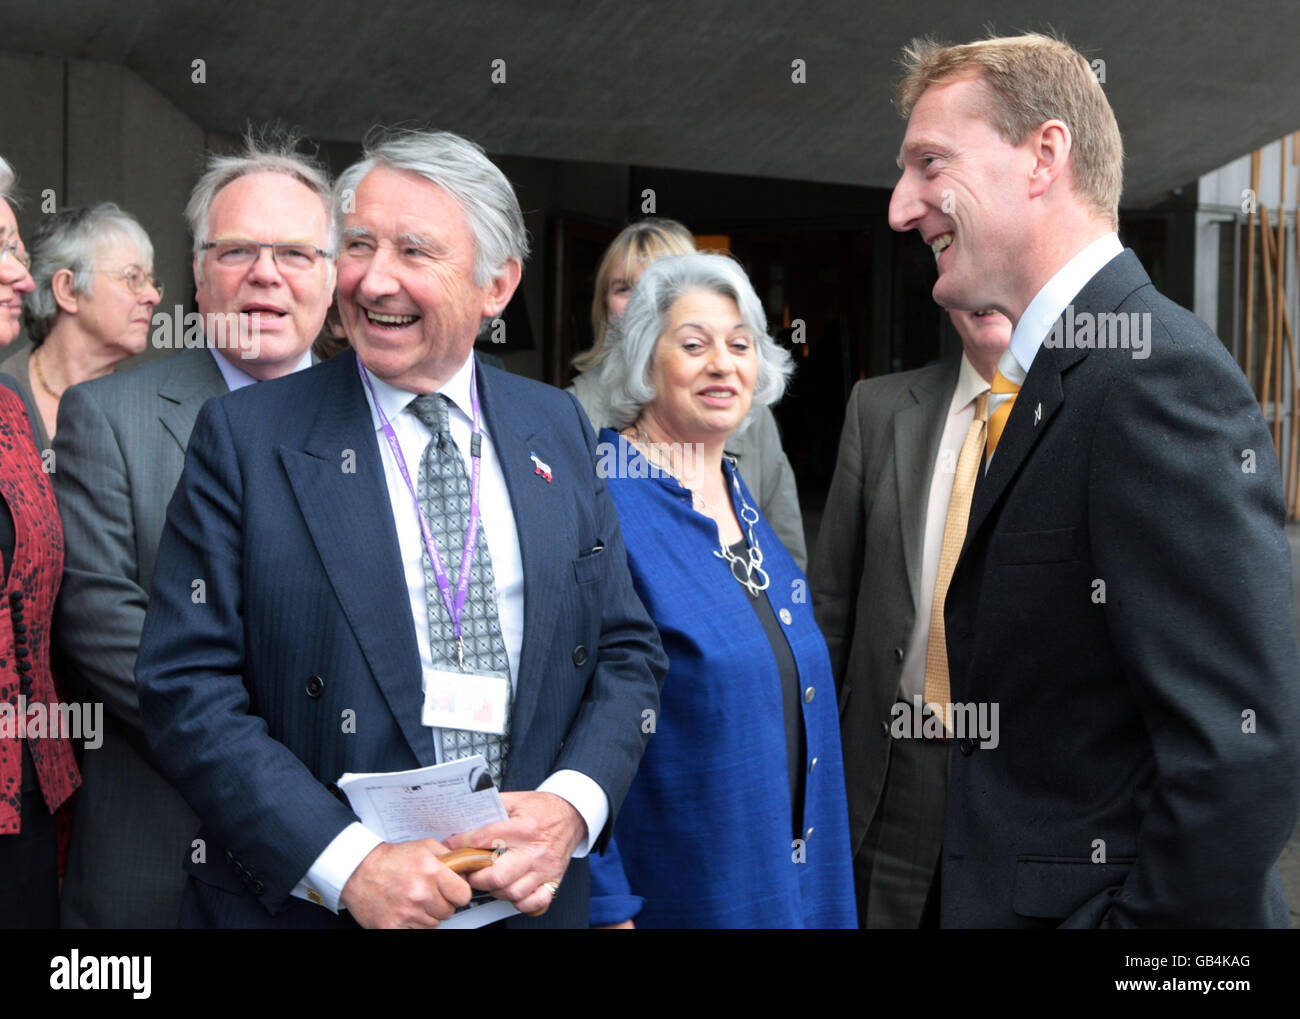 Der Vorsitzende der Liberaldemokraten in Schottland, Tavish Scott (rechts), begrüßt eine Delegation von 14 liberal-demokratischen Lords im schottischen parlament in Edinburgh. Zu den Gastkollegen gehören der ehemalige Vorsitzende Lord Steel (links). Stockfoto